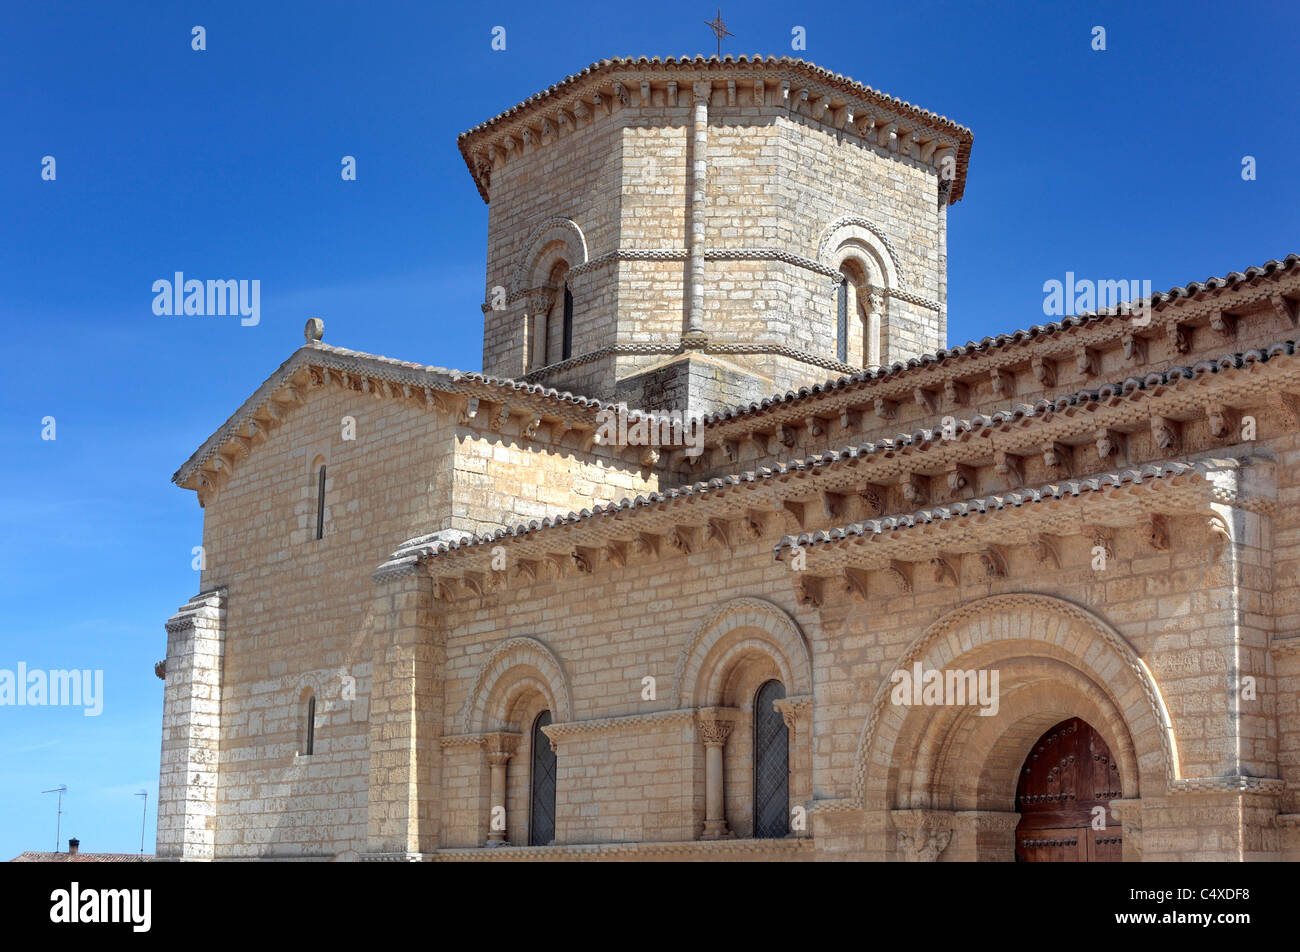 Église romane de Saint Martin de Tours, Fromista, Valladolid, Castille et Leon, Espagne Banque D'Images